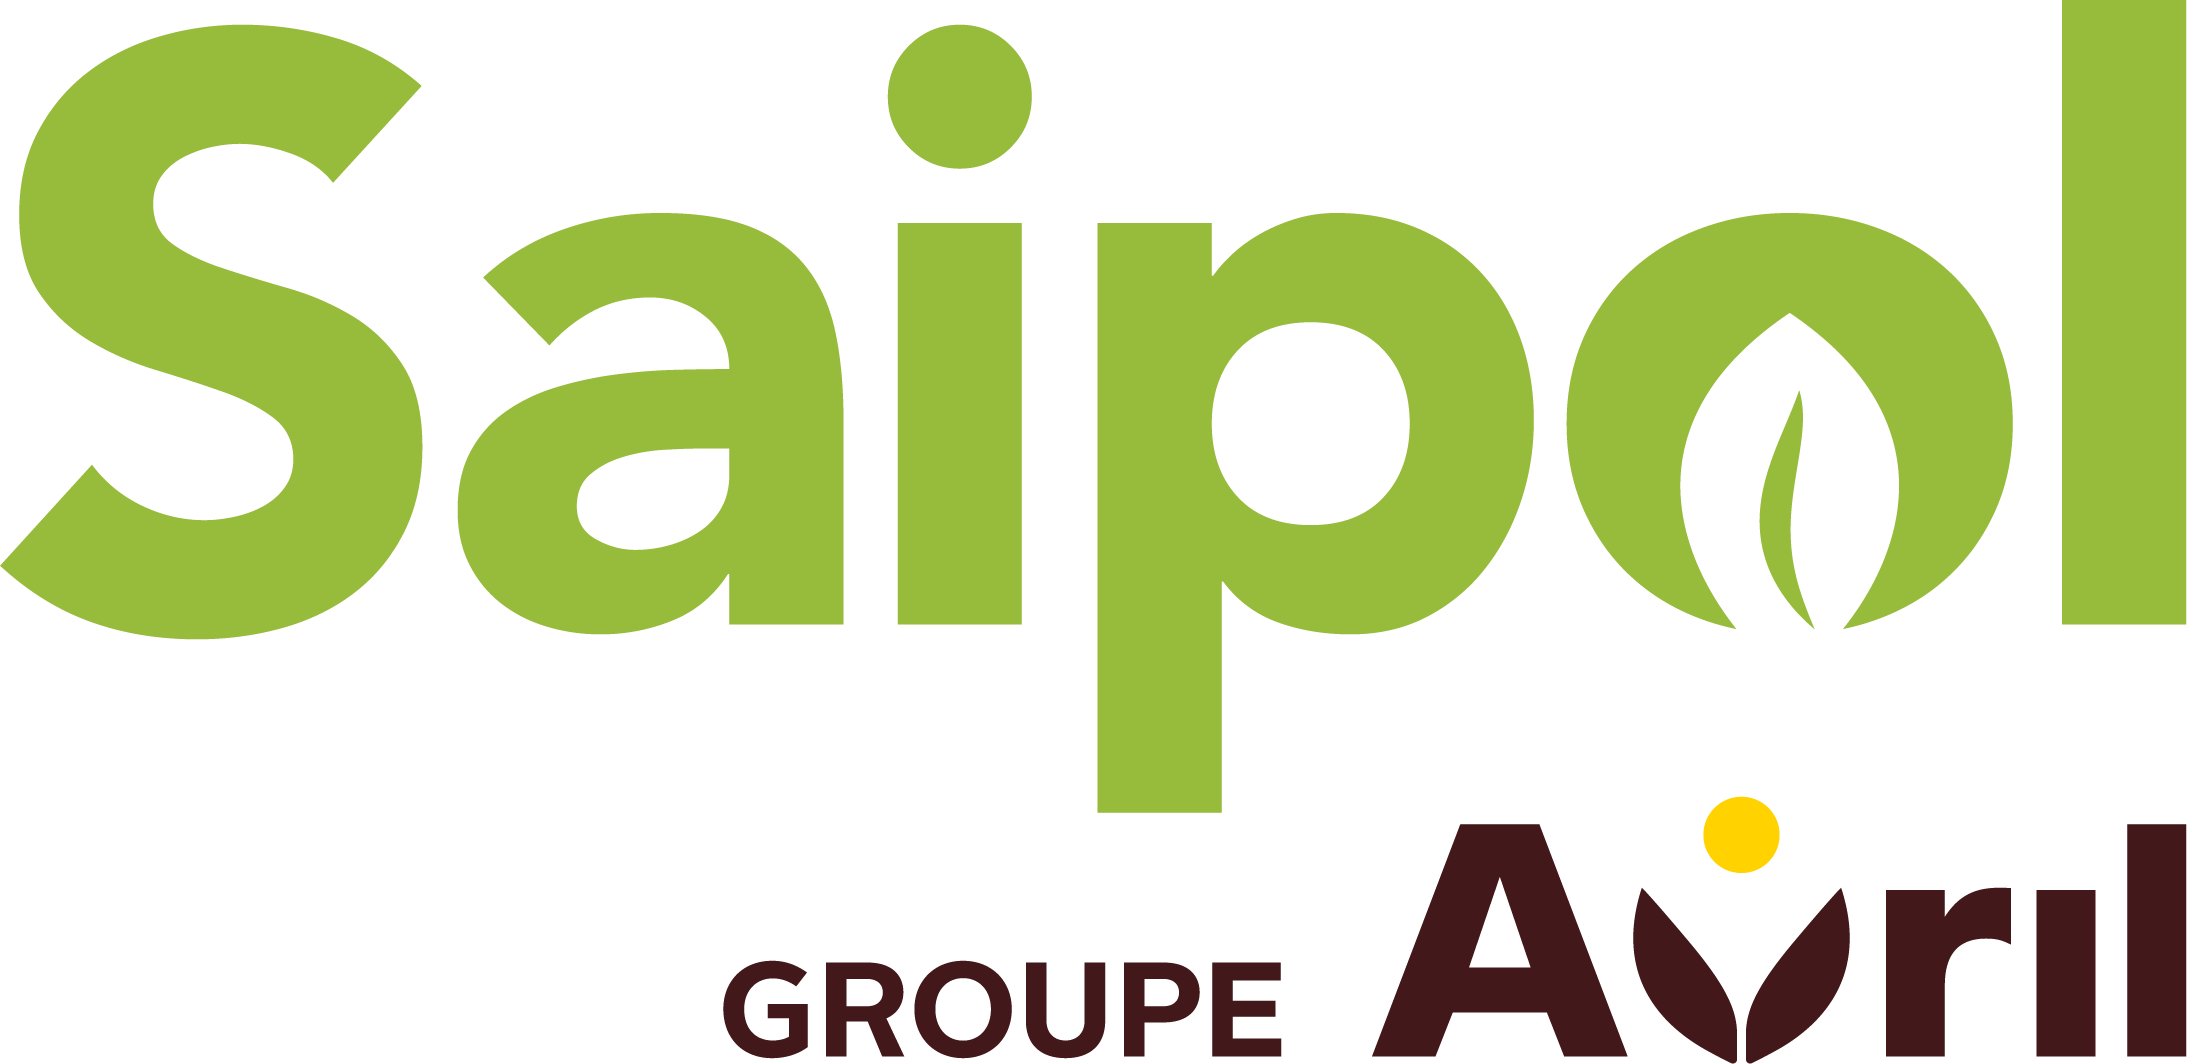 Logo Saipol endossement Avril 2017 RVB